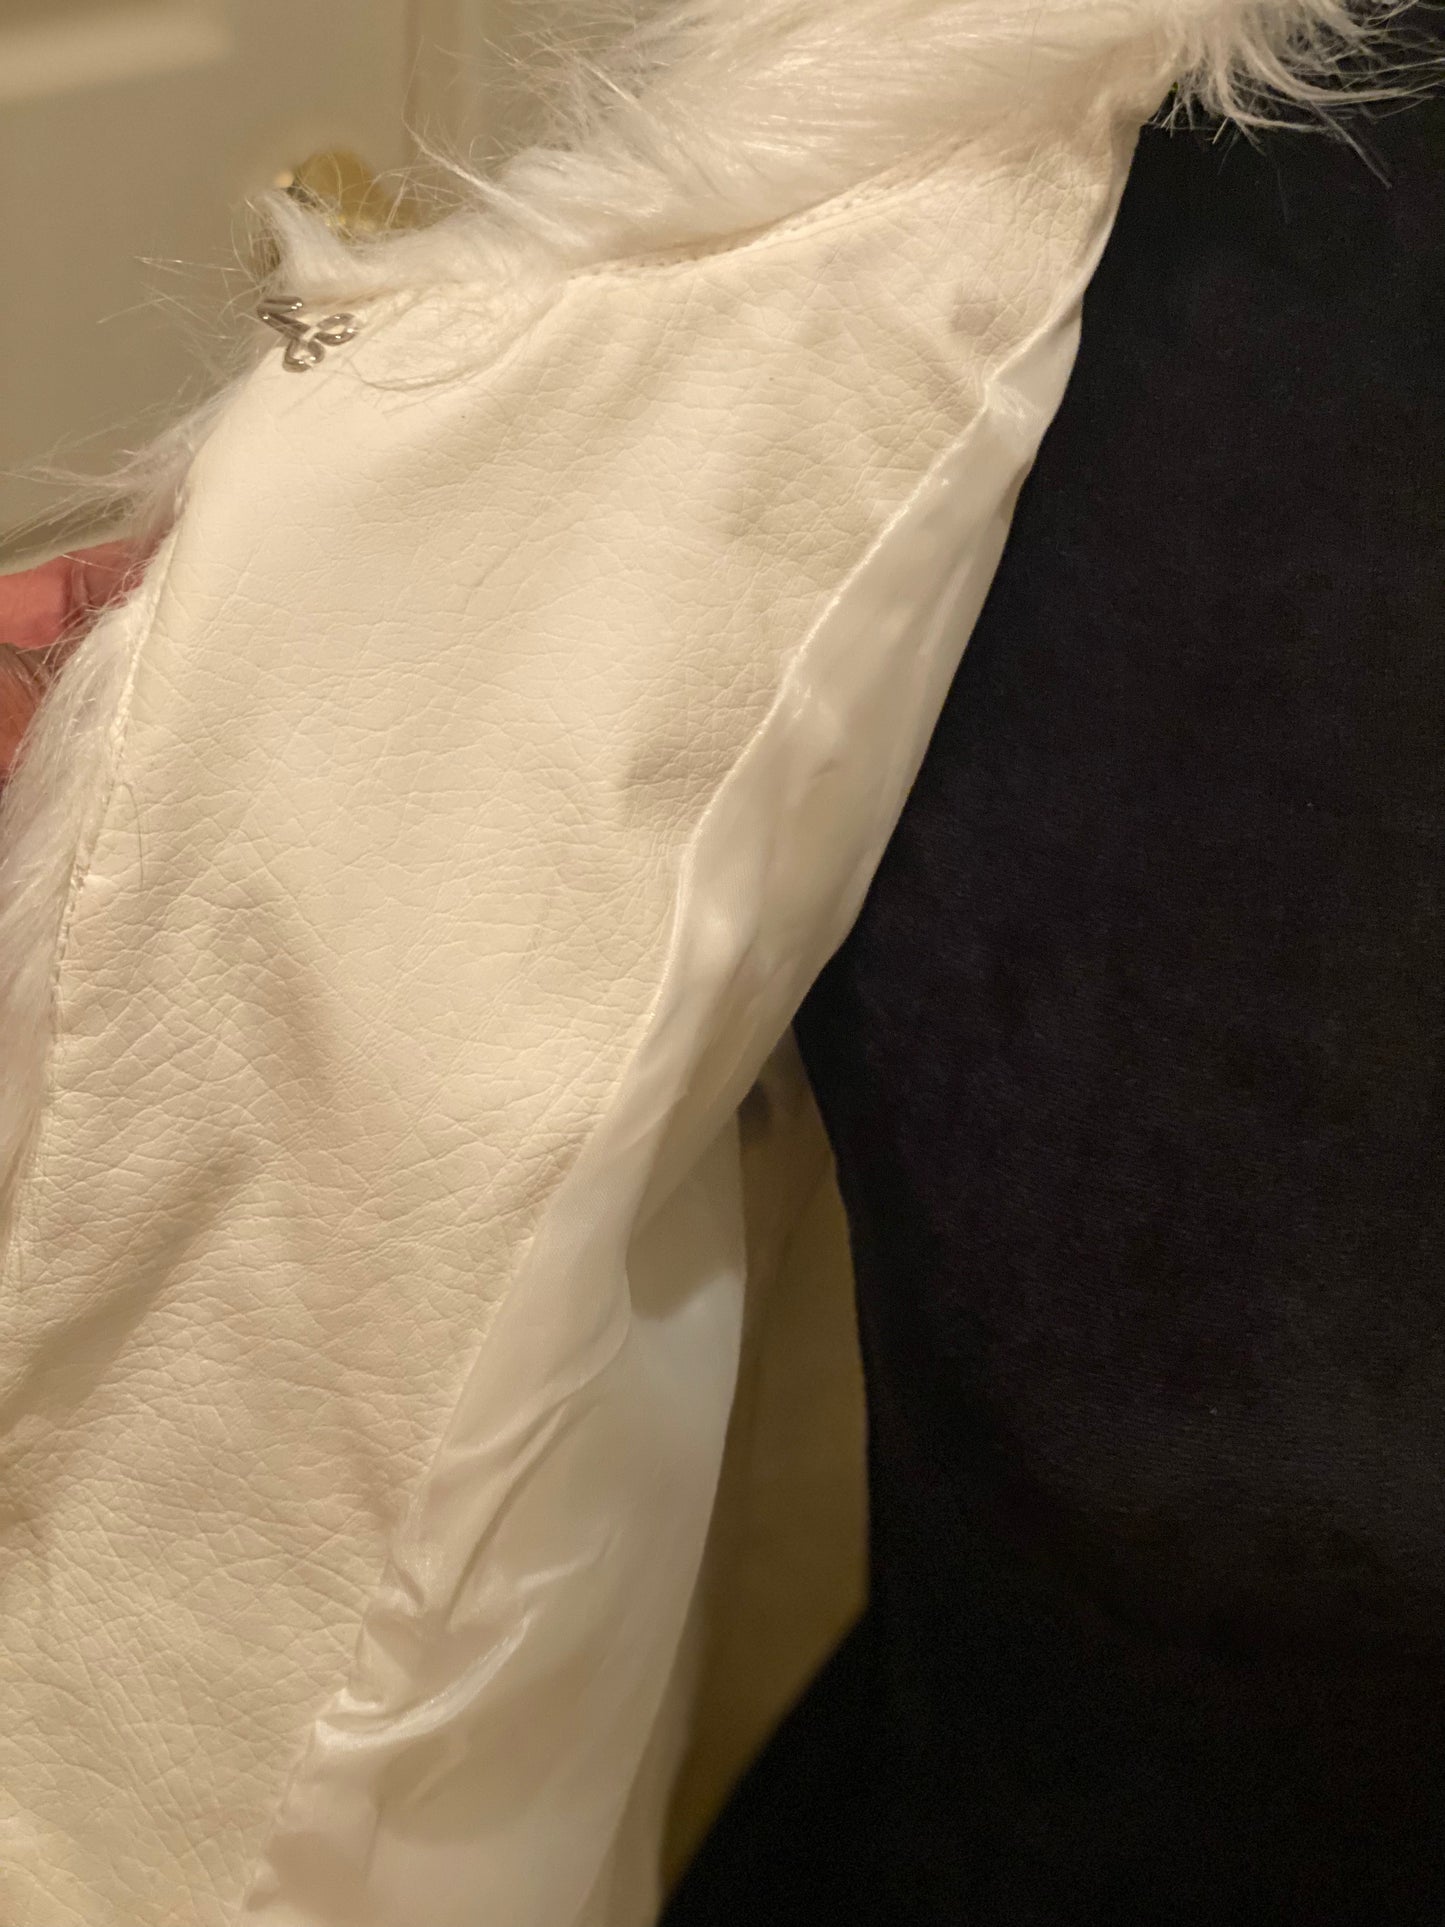 Delia’s Brand Vest, Size Large